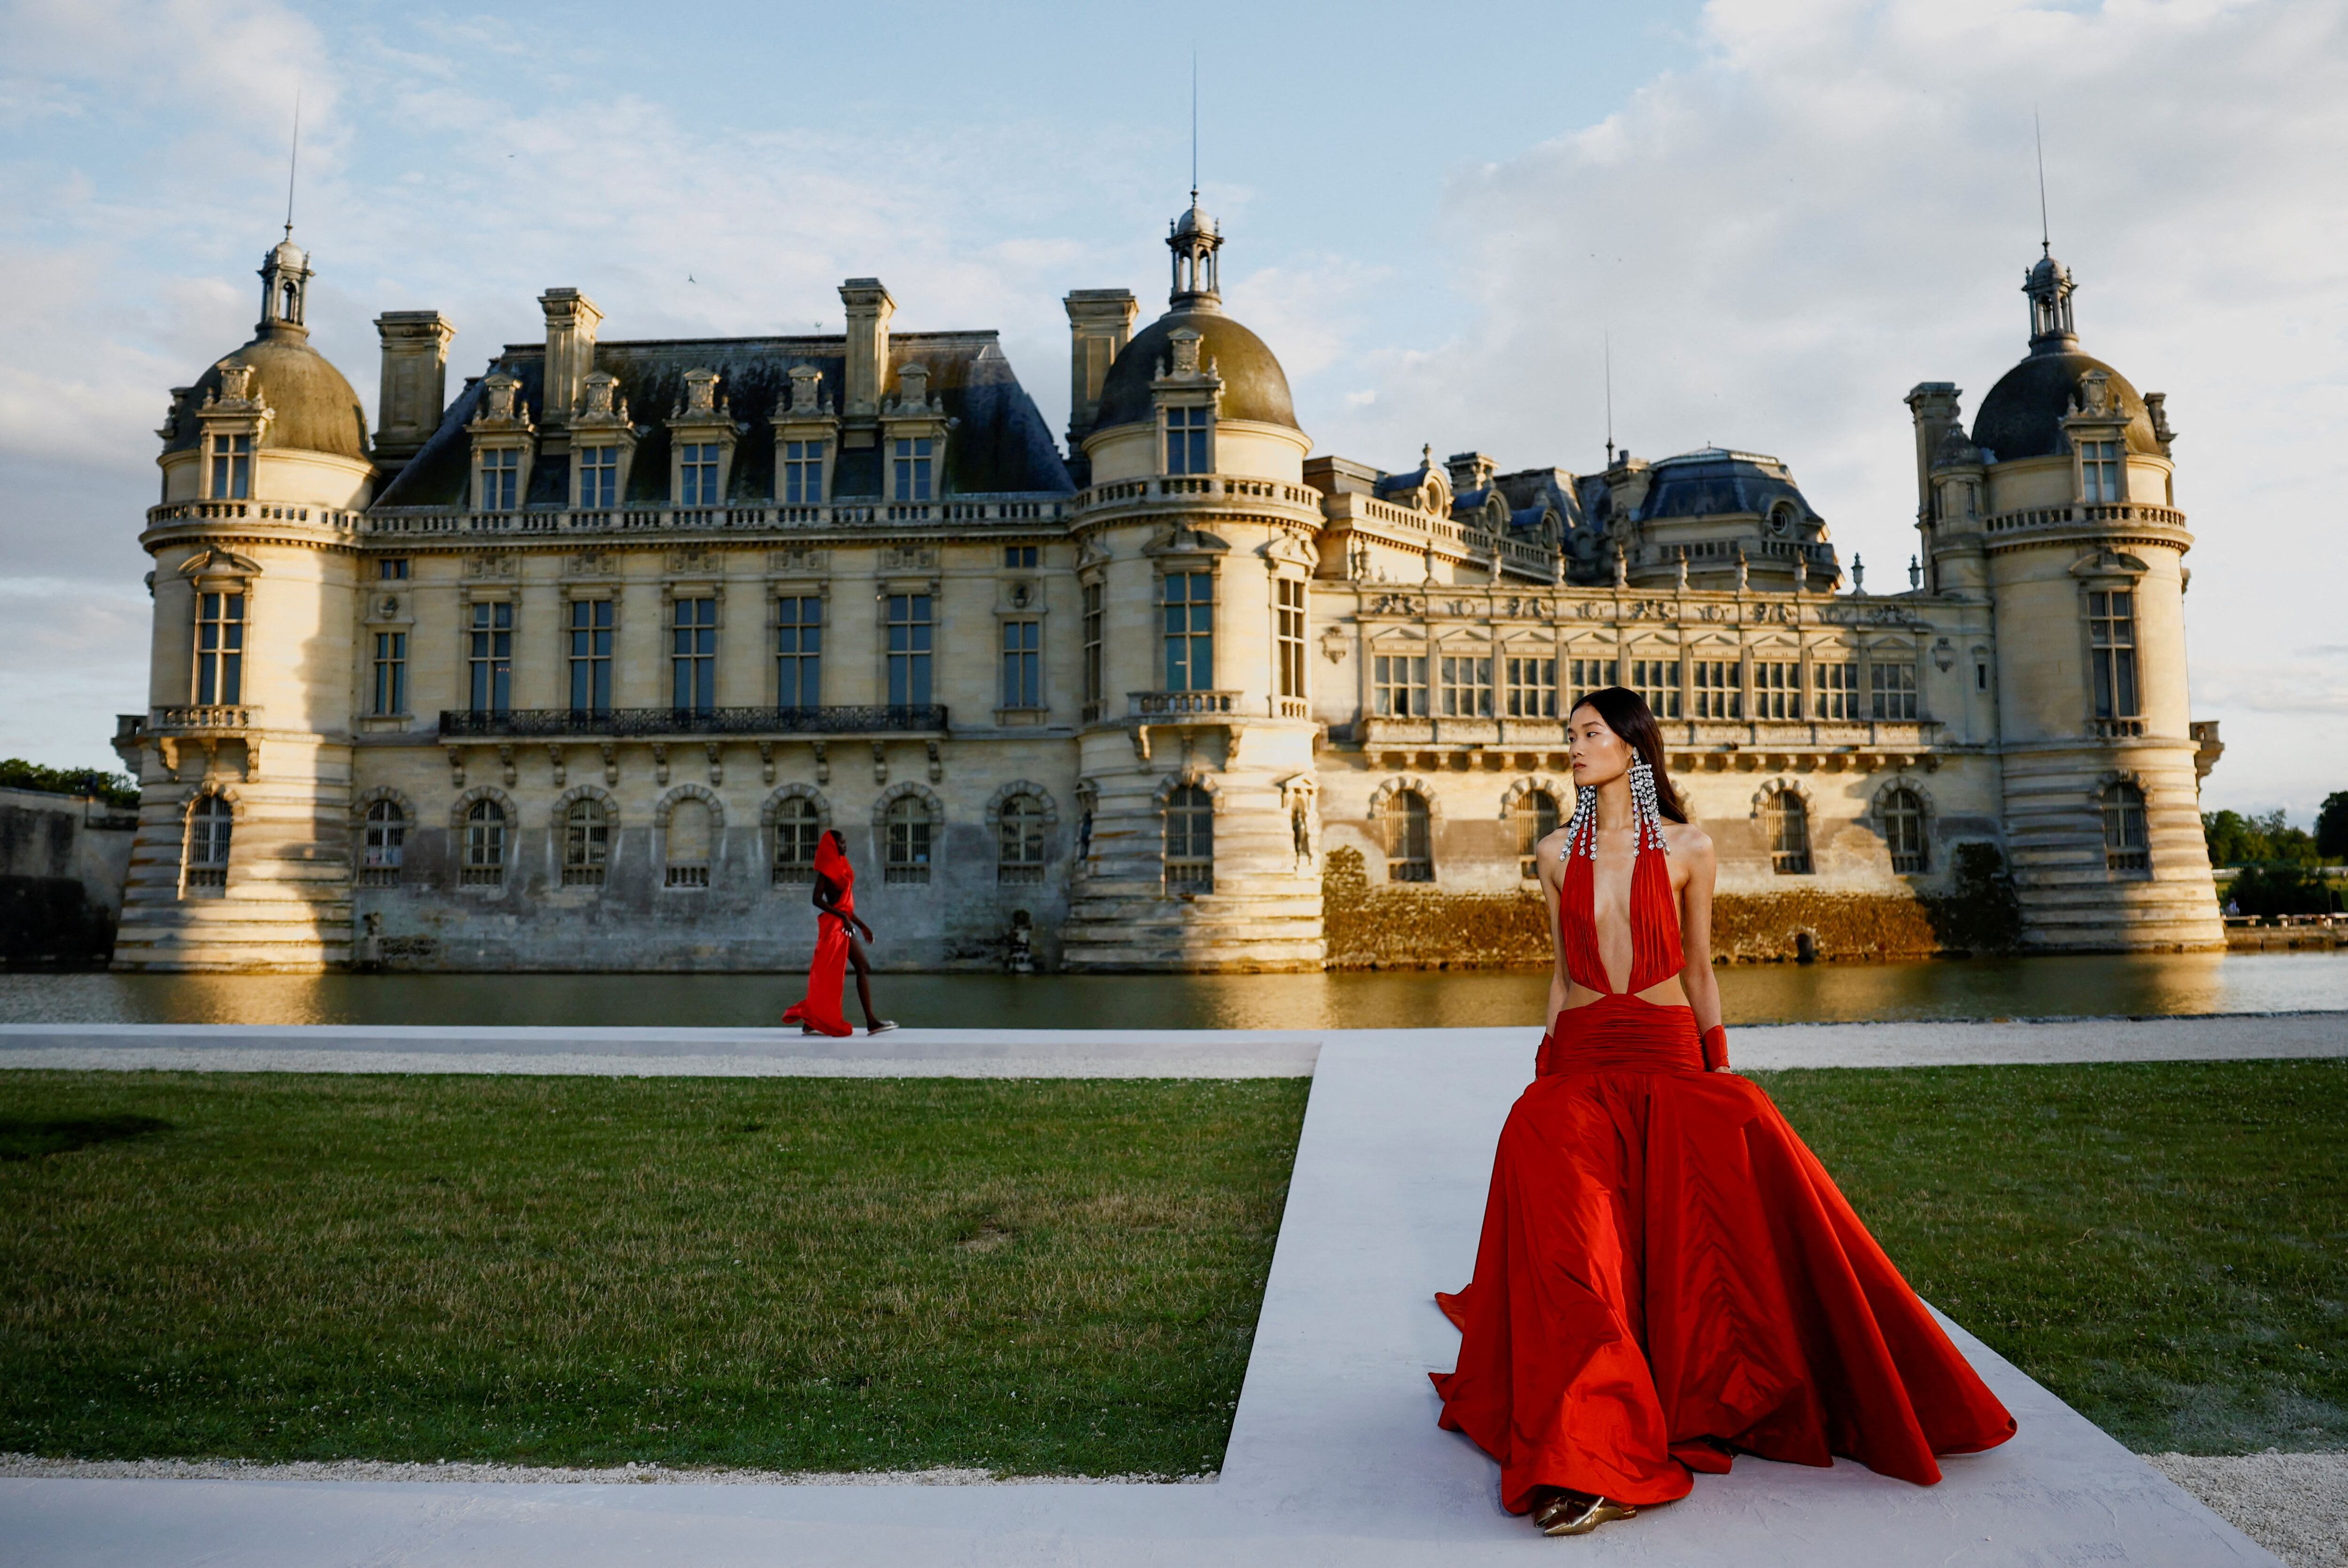 El palacio de Chantilly, al norte de París, fue el escenario elegido por  Pier Paolo Piccioli para presentar la colección de alta costura para la próxima temporada de Valentino.